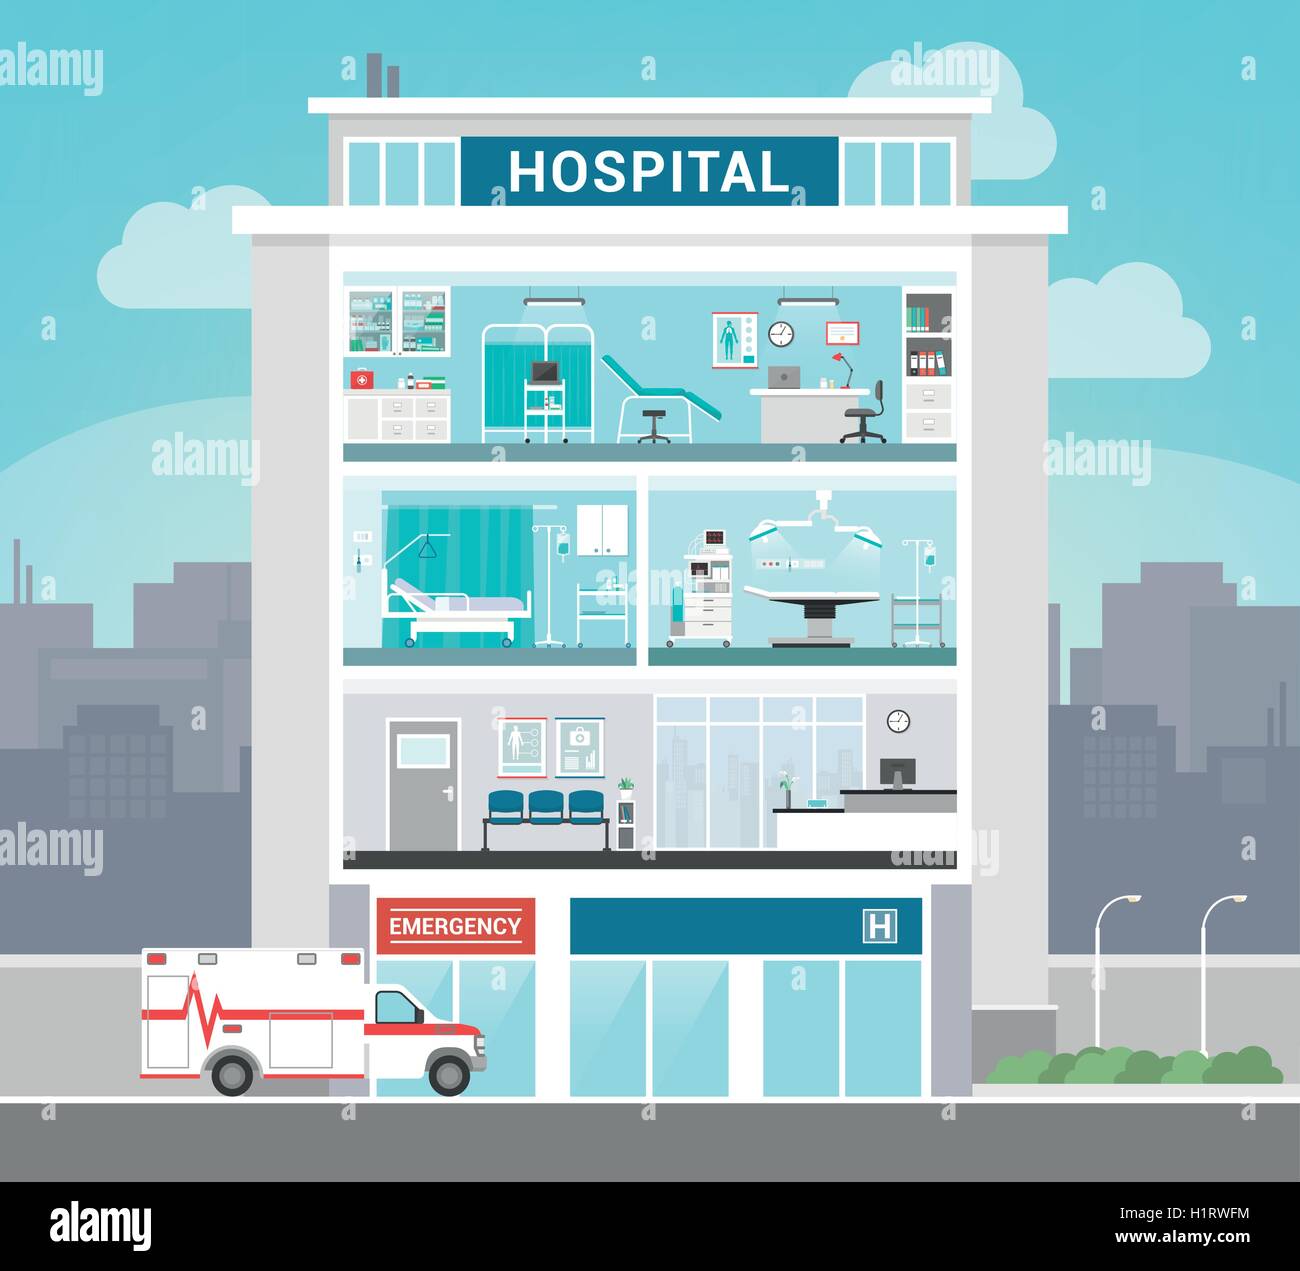 Klinikgebäude mit Abteilungen, Büros, OP-Saal, Ward, Wartezimmer und Rezeption, medizinisches Konzept Stock Vektor